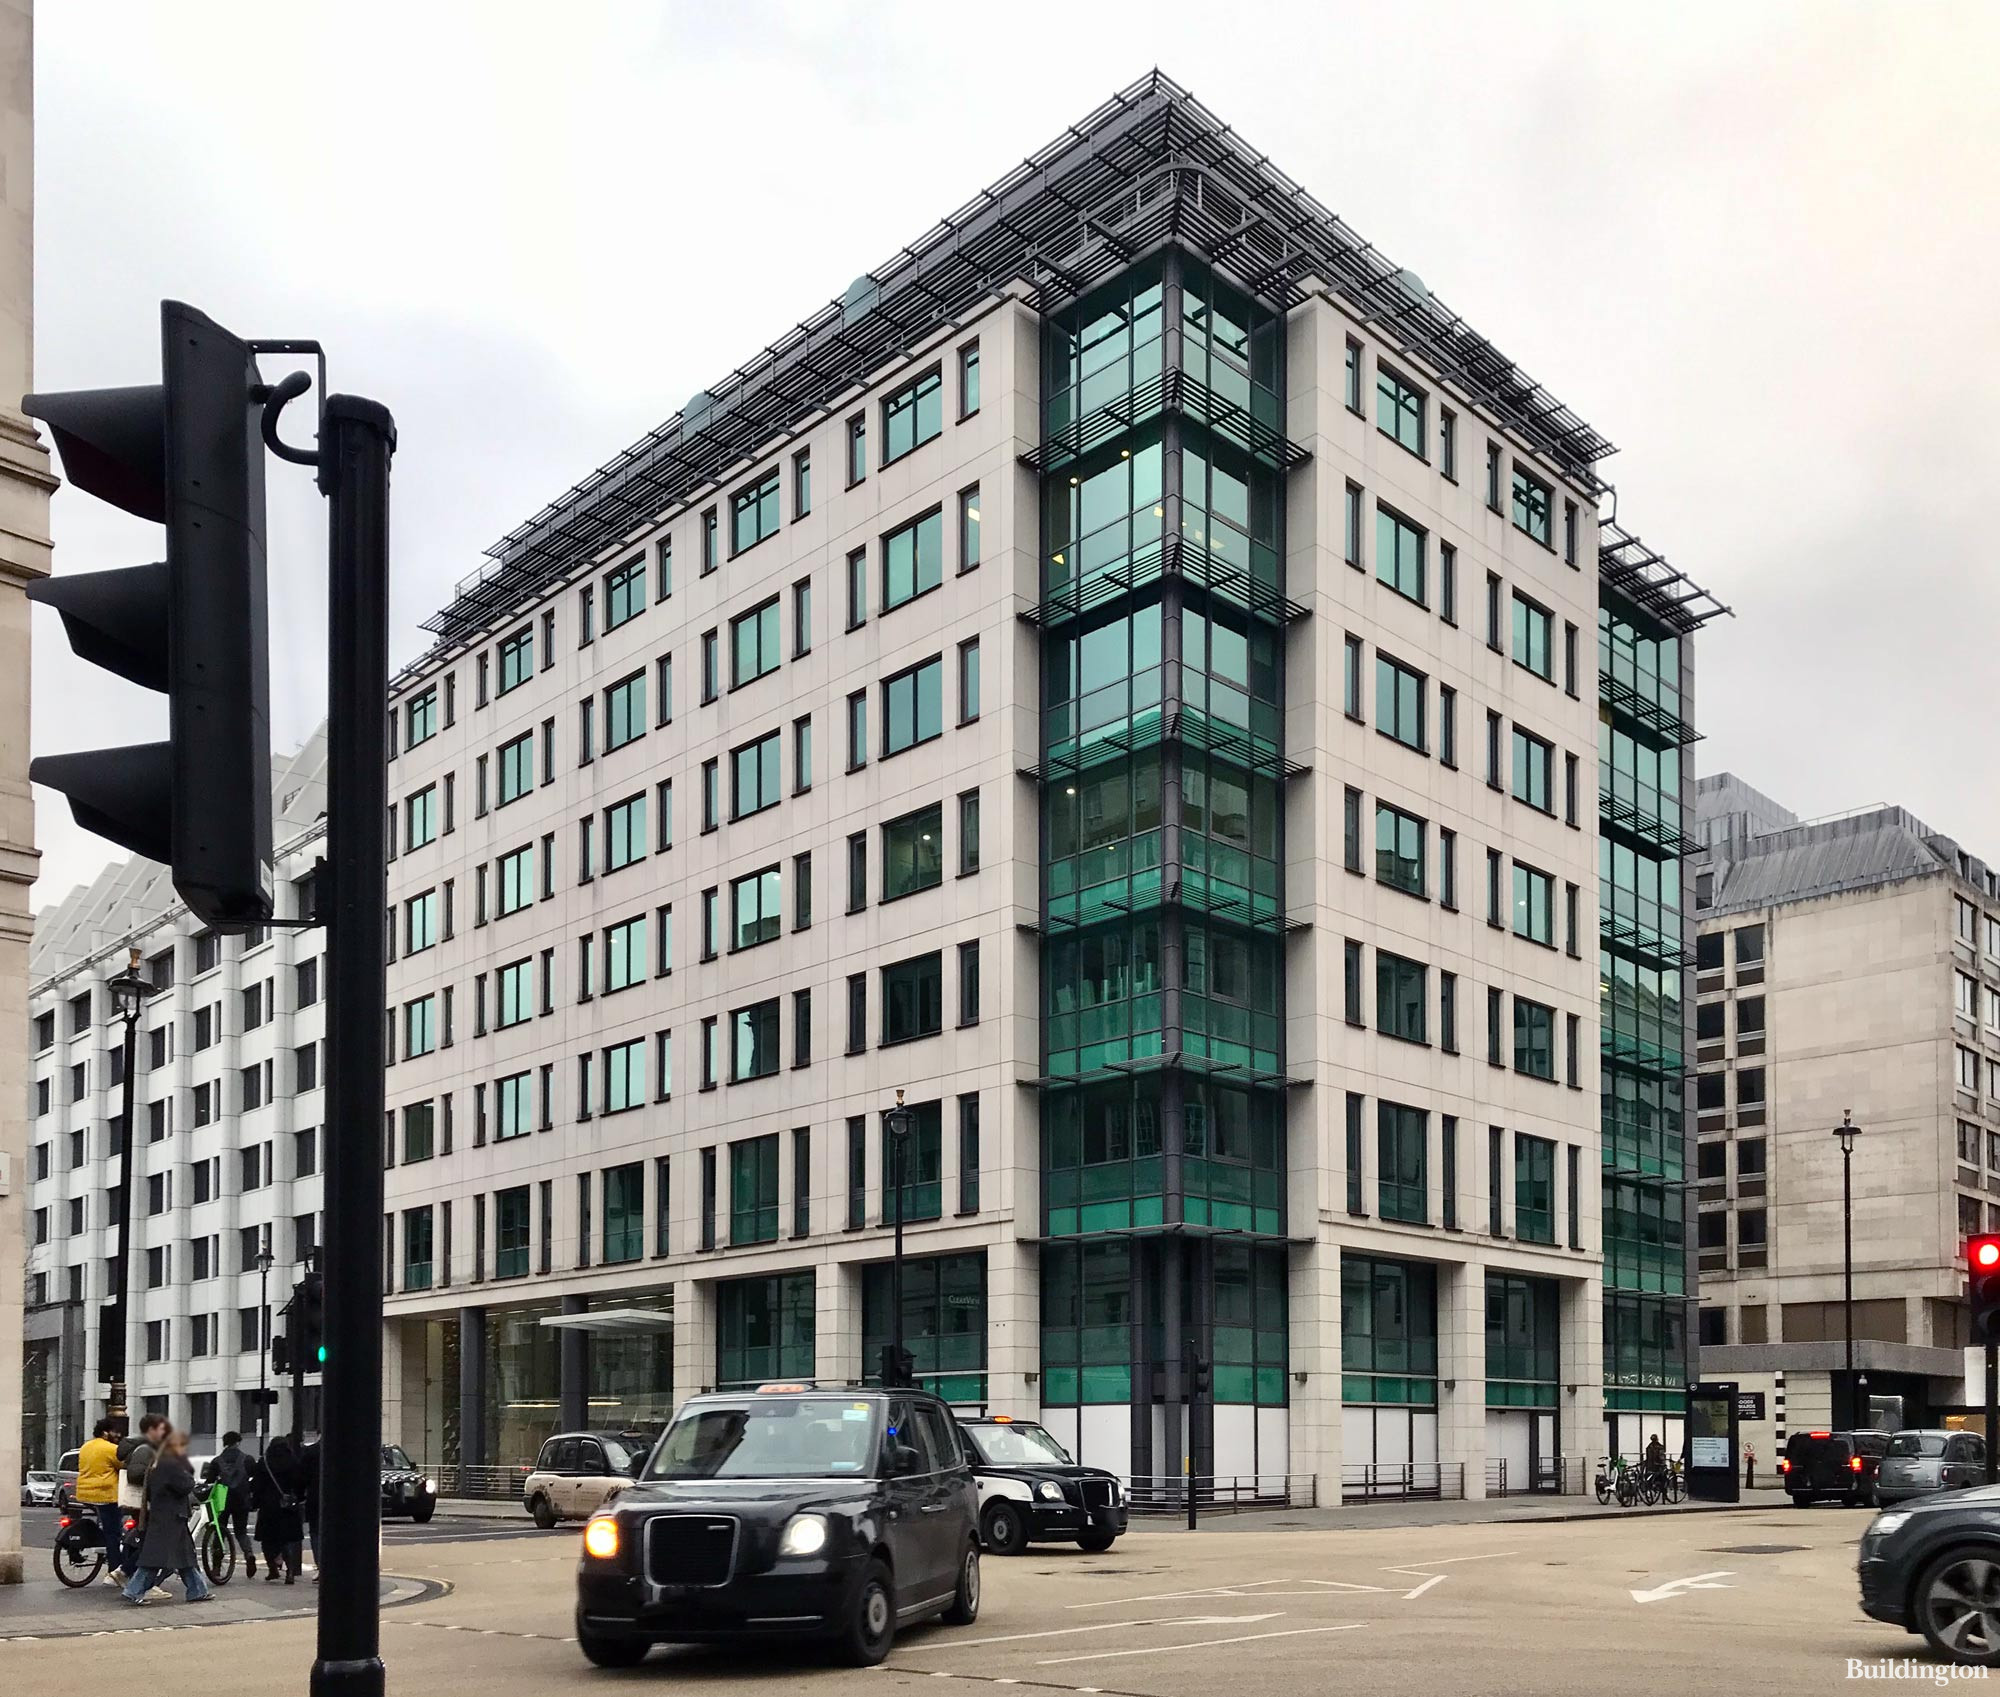 105 Wigmore Street office building in Marylebone, London W1.